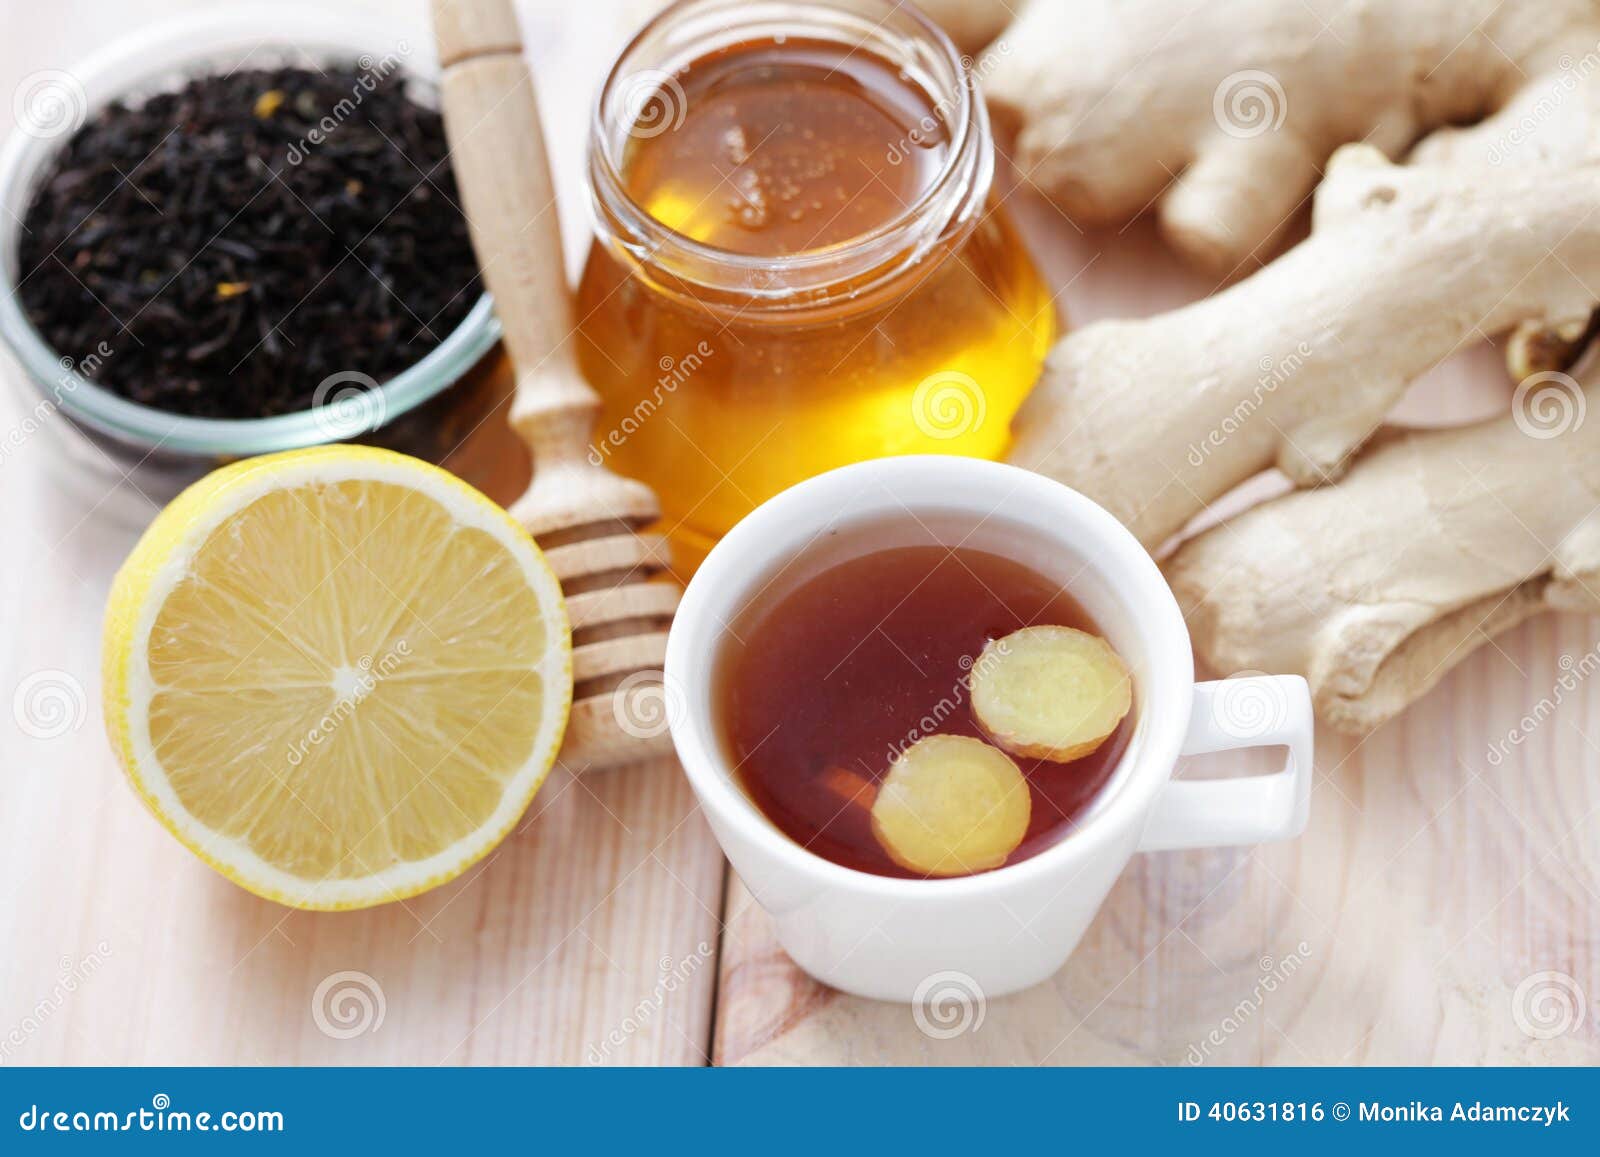 Что будет если пить чай с лимоном. Имбирный чай. Чай с медом. Чай с имбирем. Чай с лимоном и имбирем.